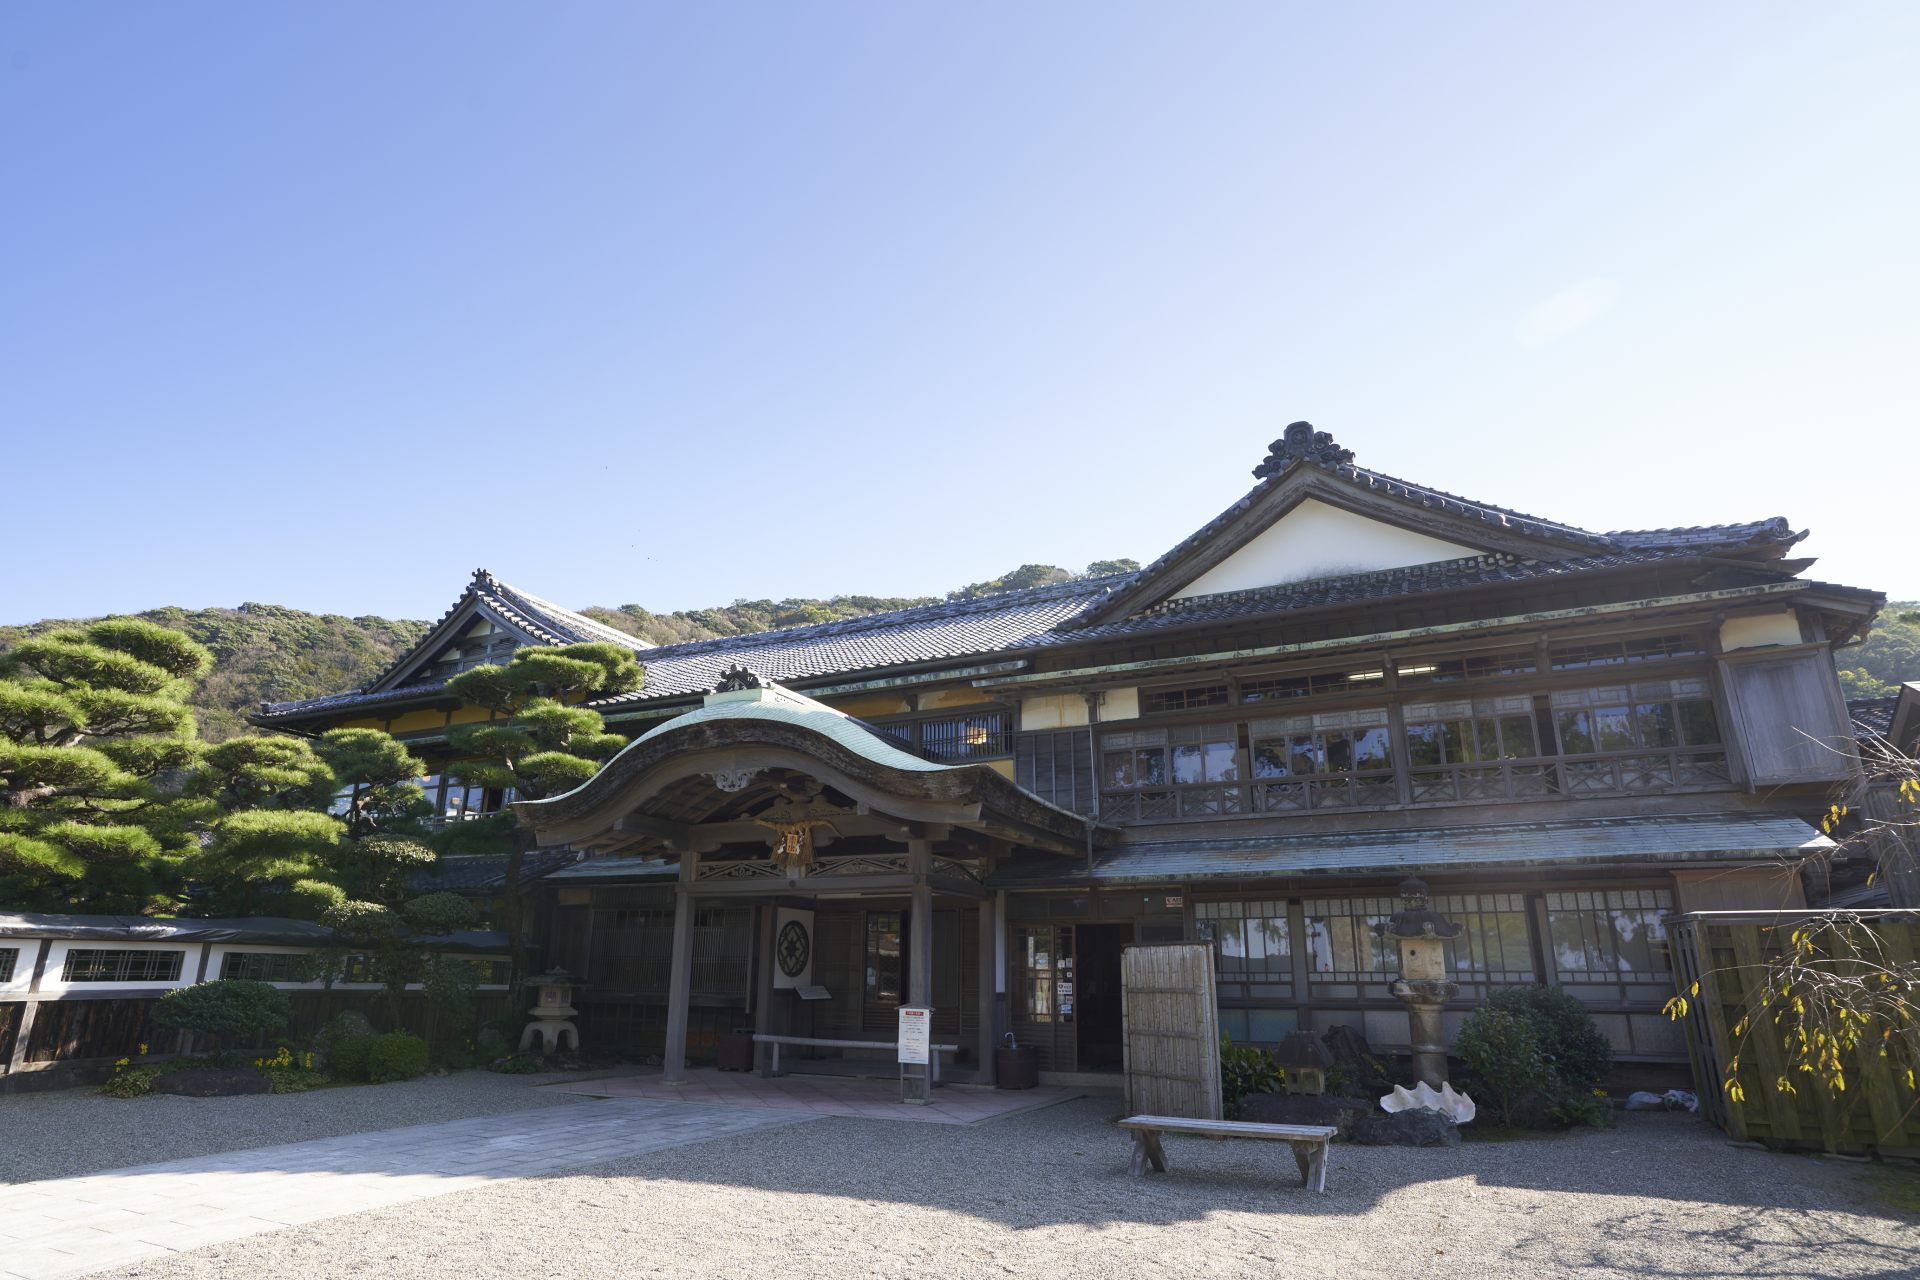 重厚かつ優美な日本建築の様式で、界隈でもひと際存在感を放つ